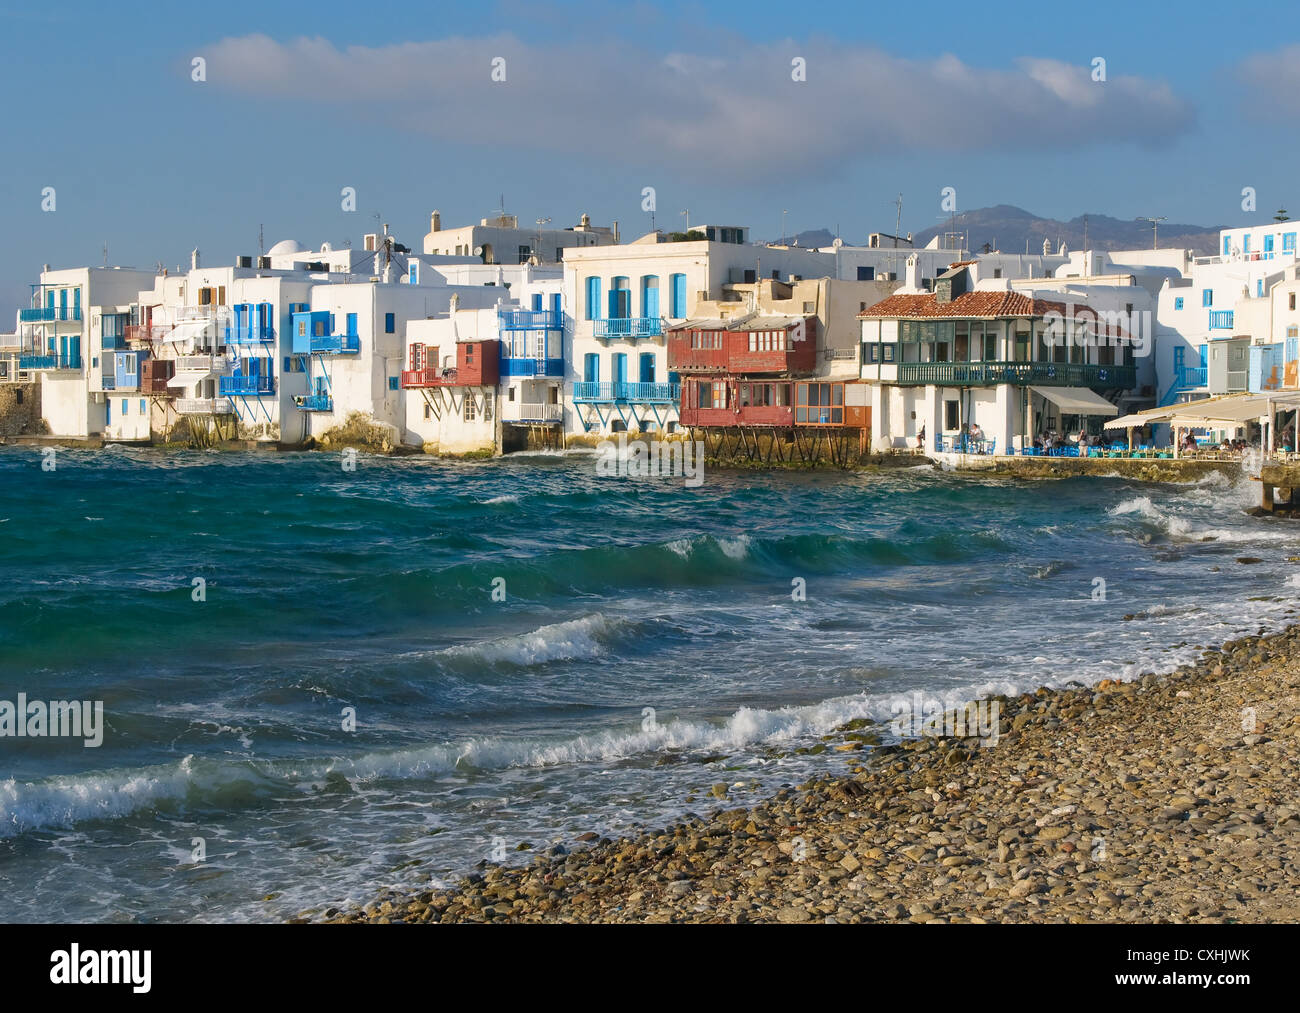 La petite Venise, l'île de Mykonos, Grèce Banque D'Images